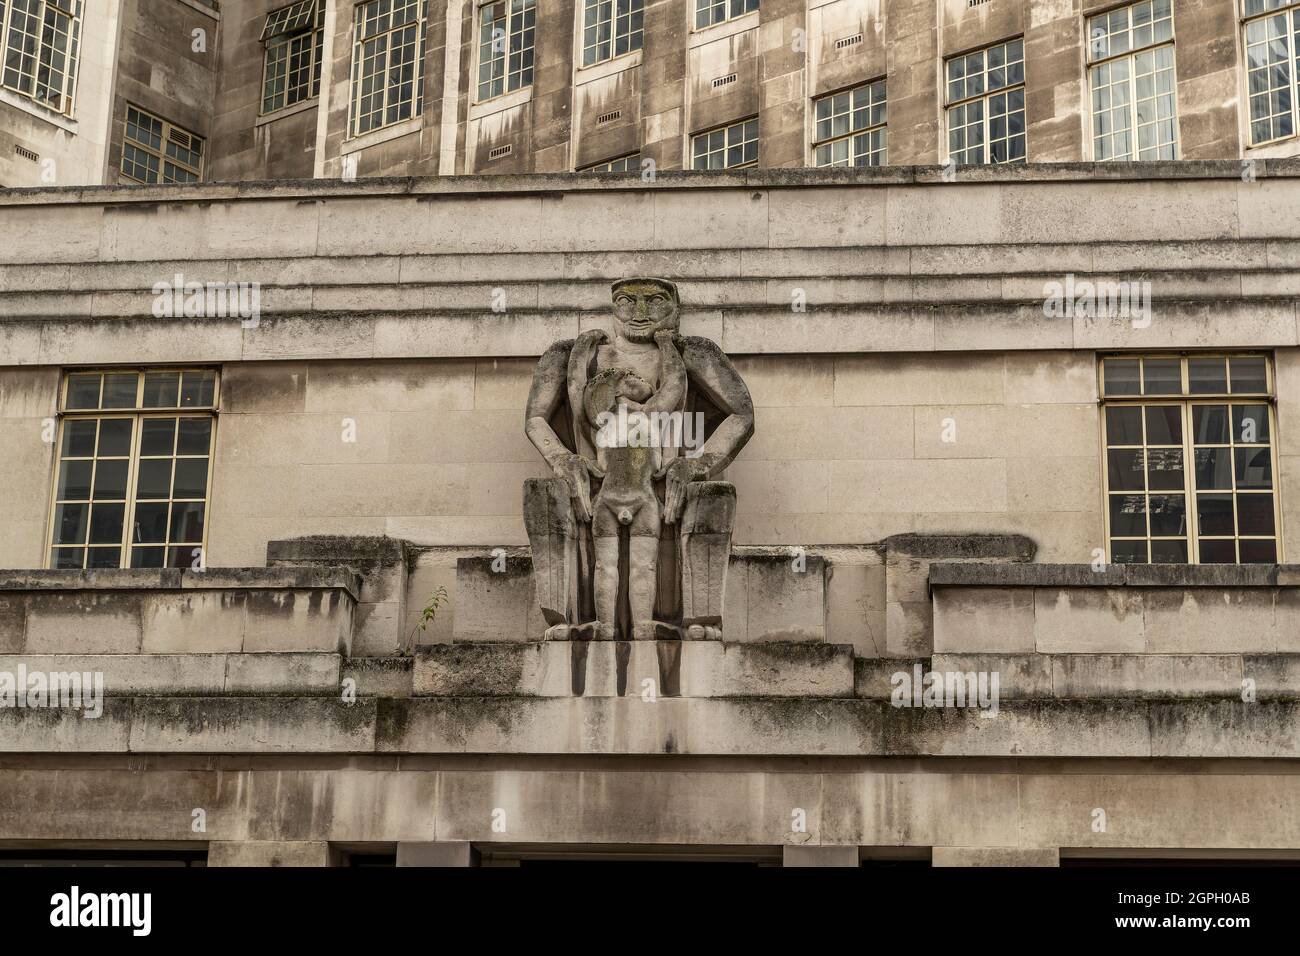 Statue outside London Transport Head Office in London Stock Photo